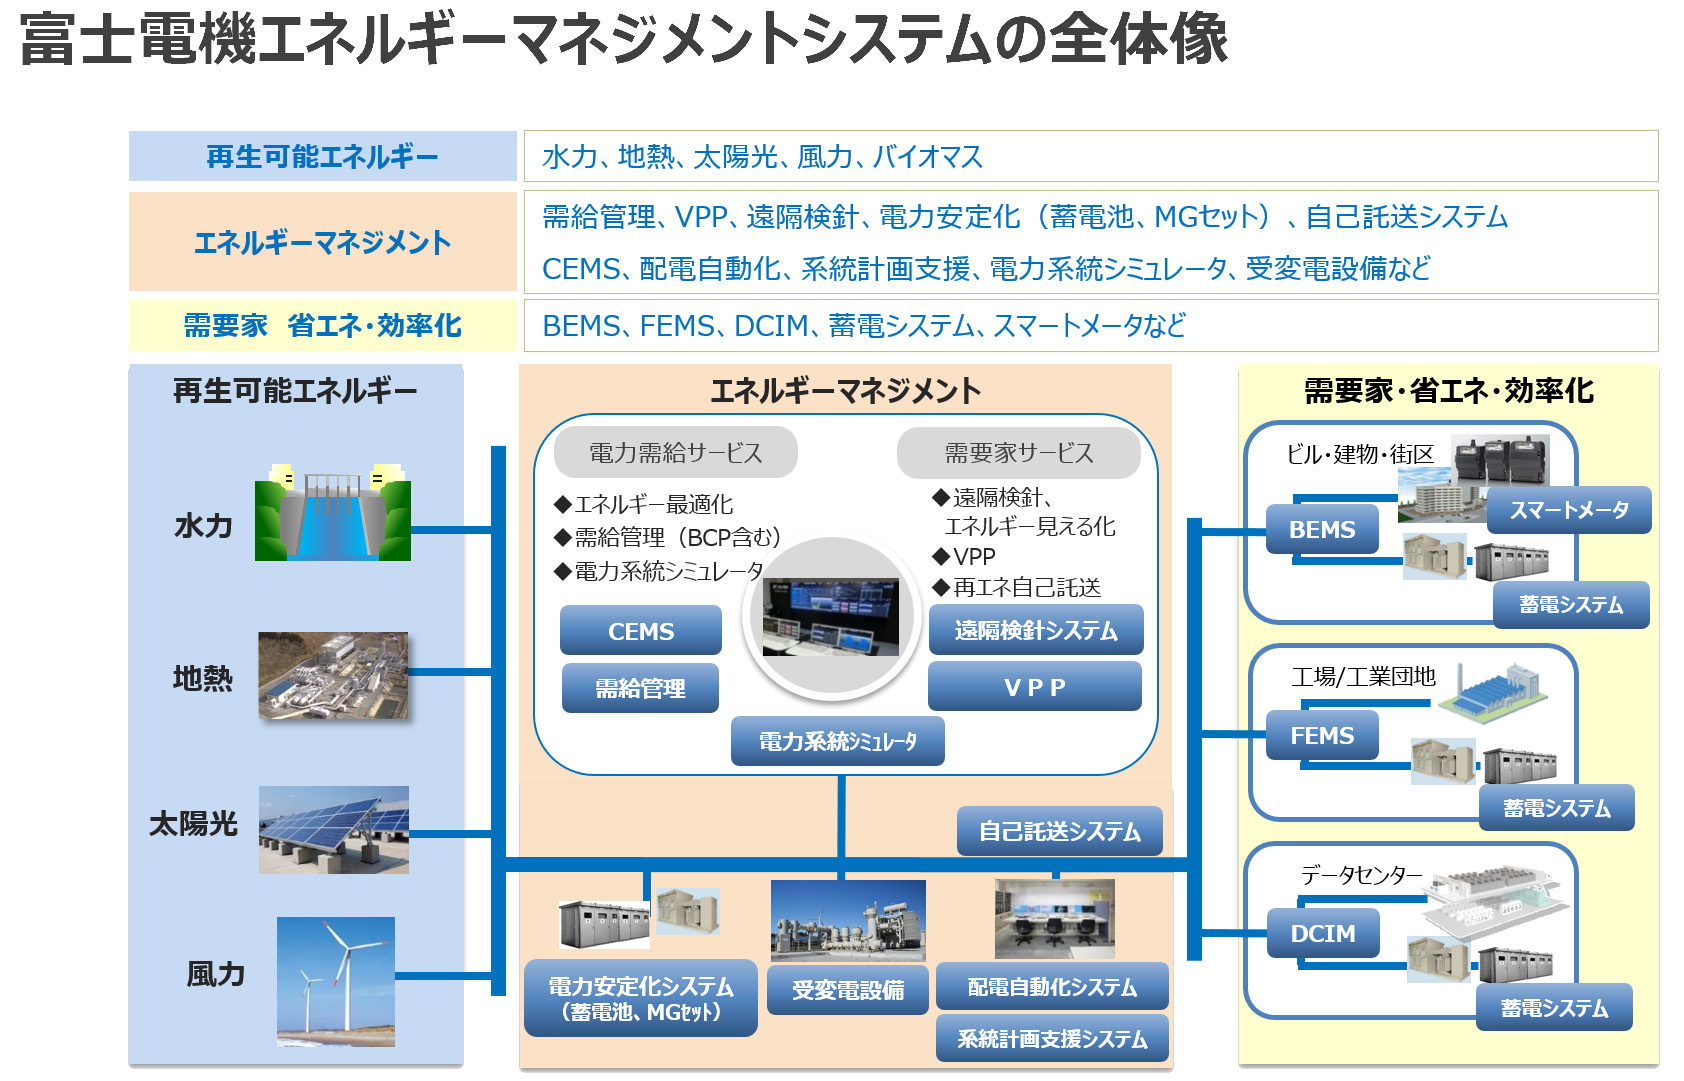 富士電機エネルギーマネジメントシステムの全体像